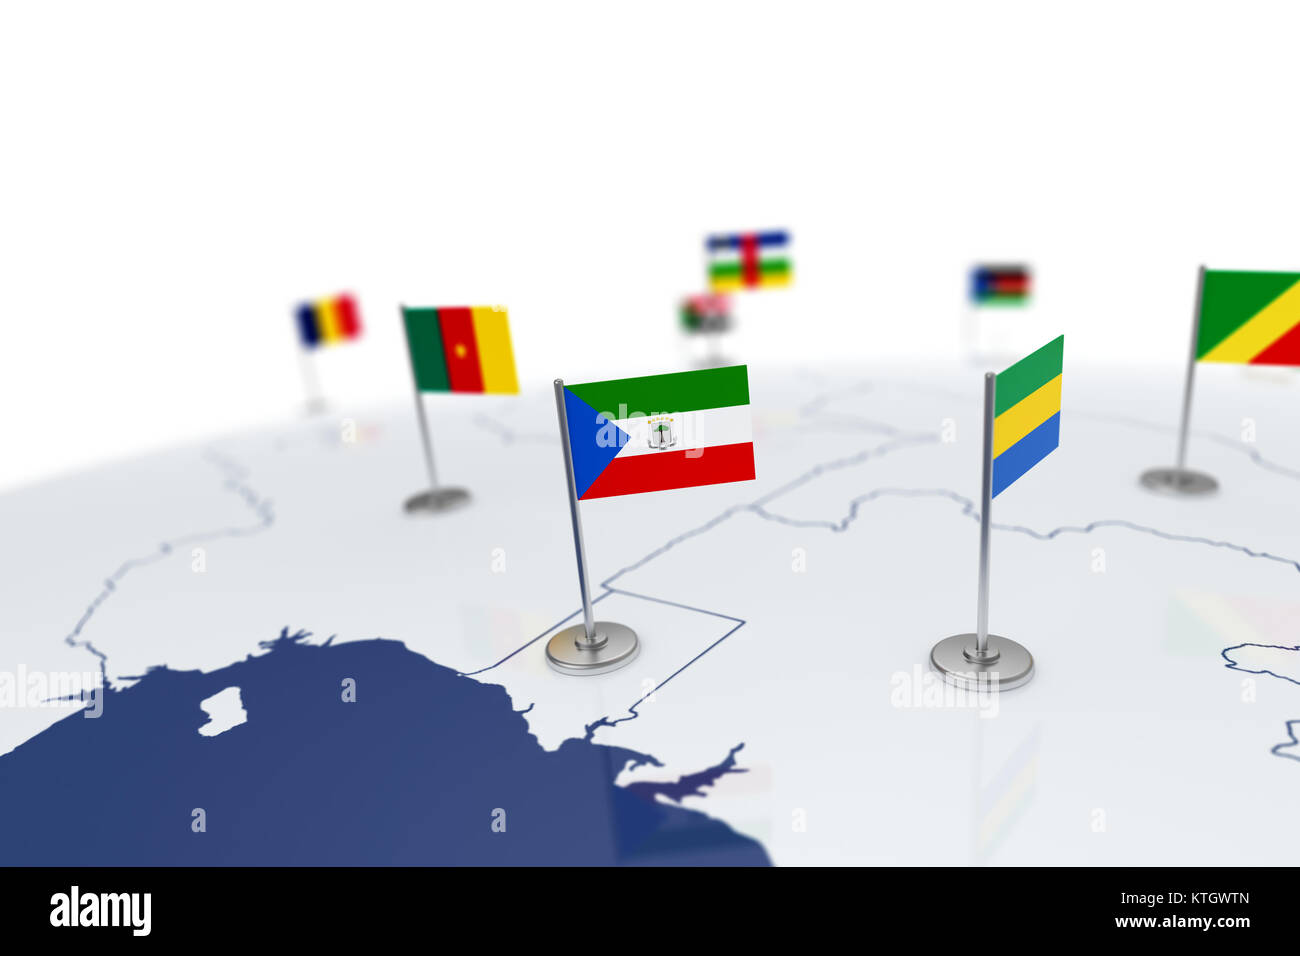 Drapeau de la Guinée équatoriale. Drapeau du pays avec mât de chrome sur la carte du monde avec les frontières des pays voisins. Illustration 3D Rendering Banque D'Images